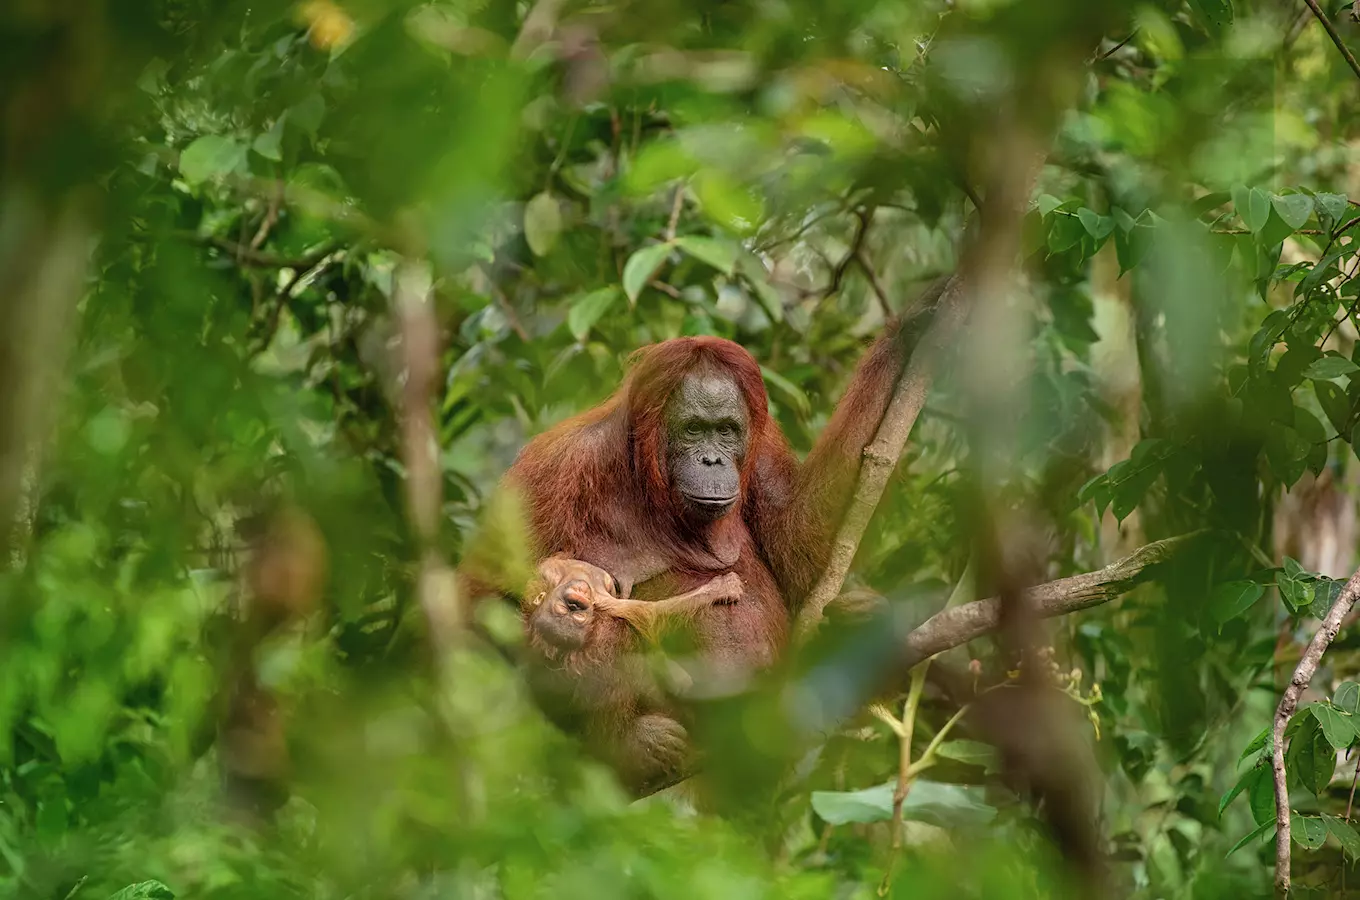 Fotografií roku Czech Press Photo je snímek orangutaní matky s umírajícím potomkem